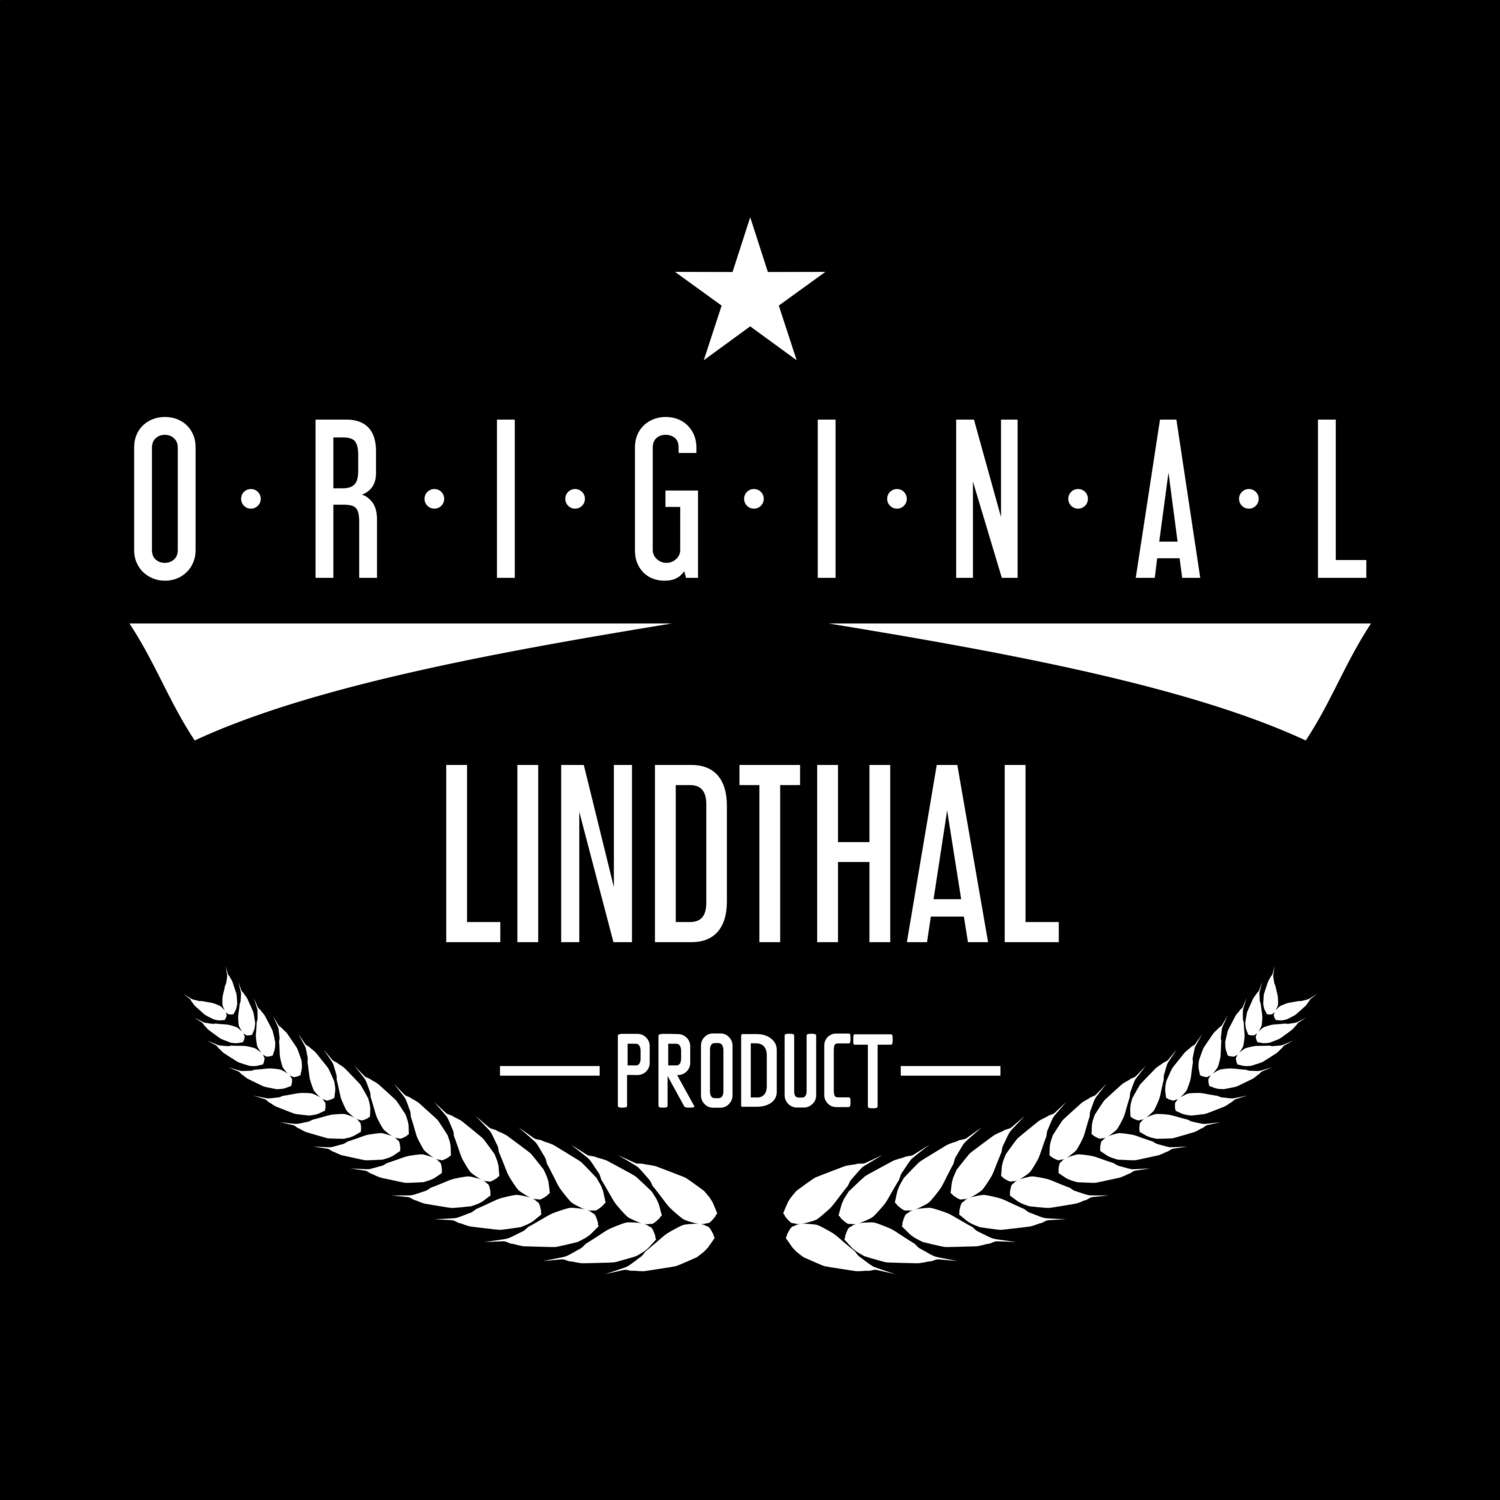 Lindthal T-Shirt »Original Product«